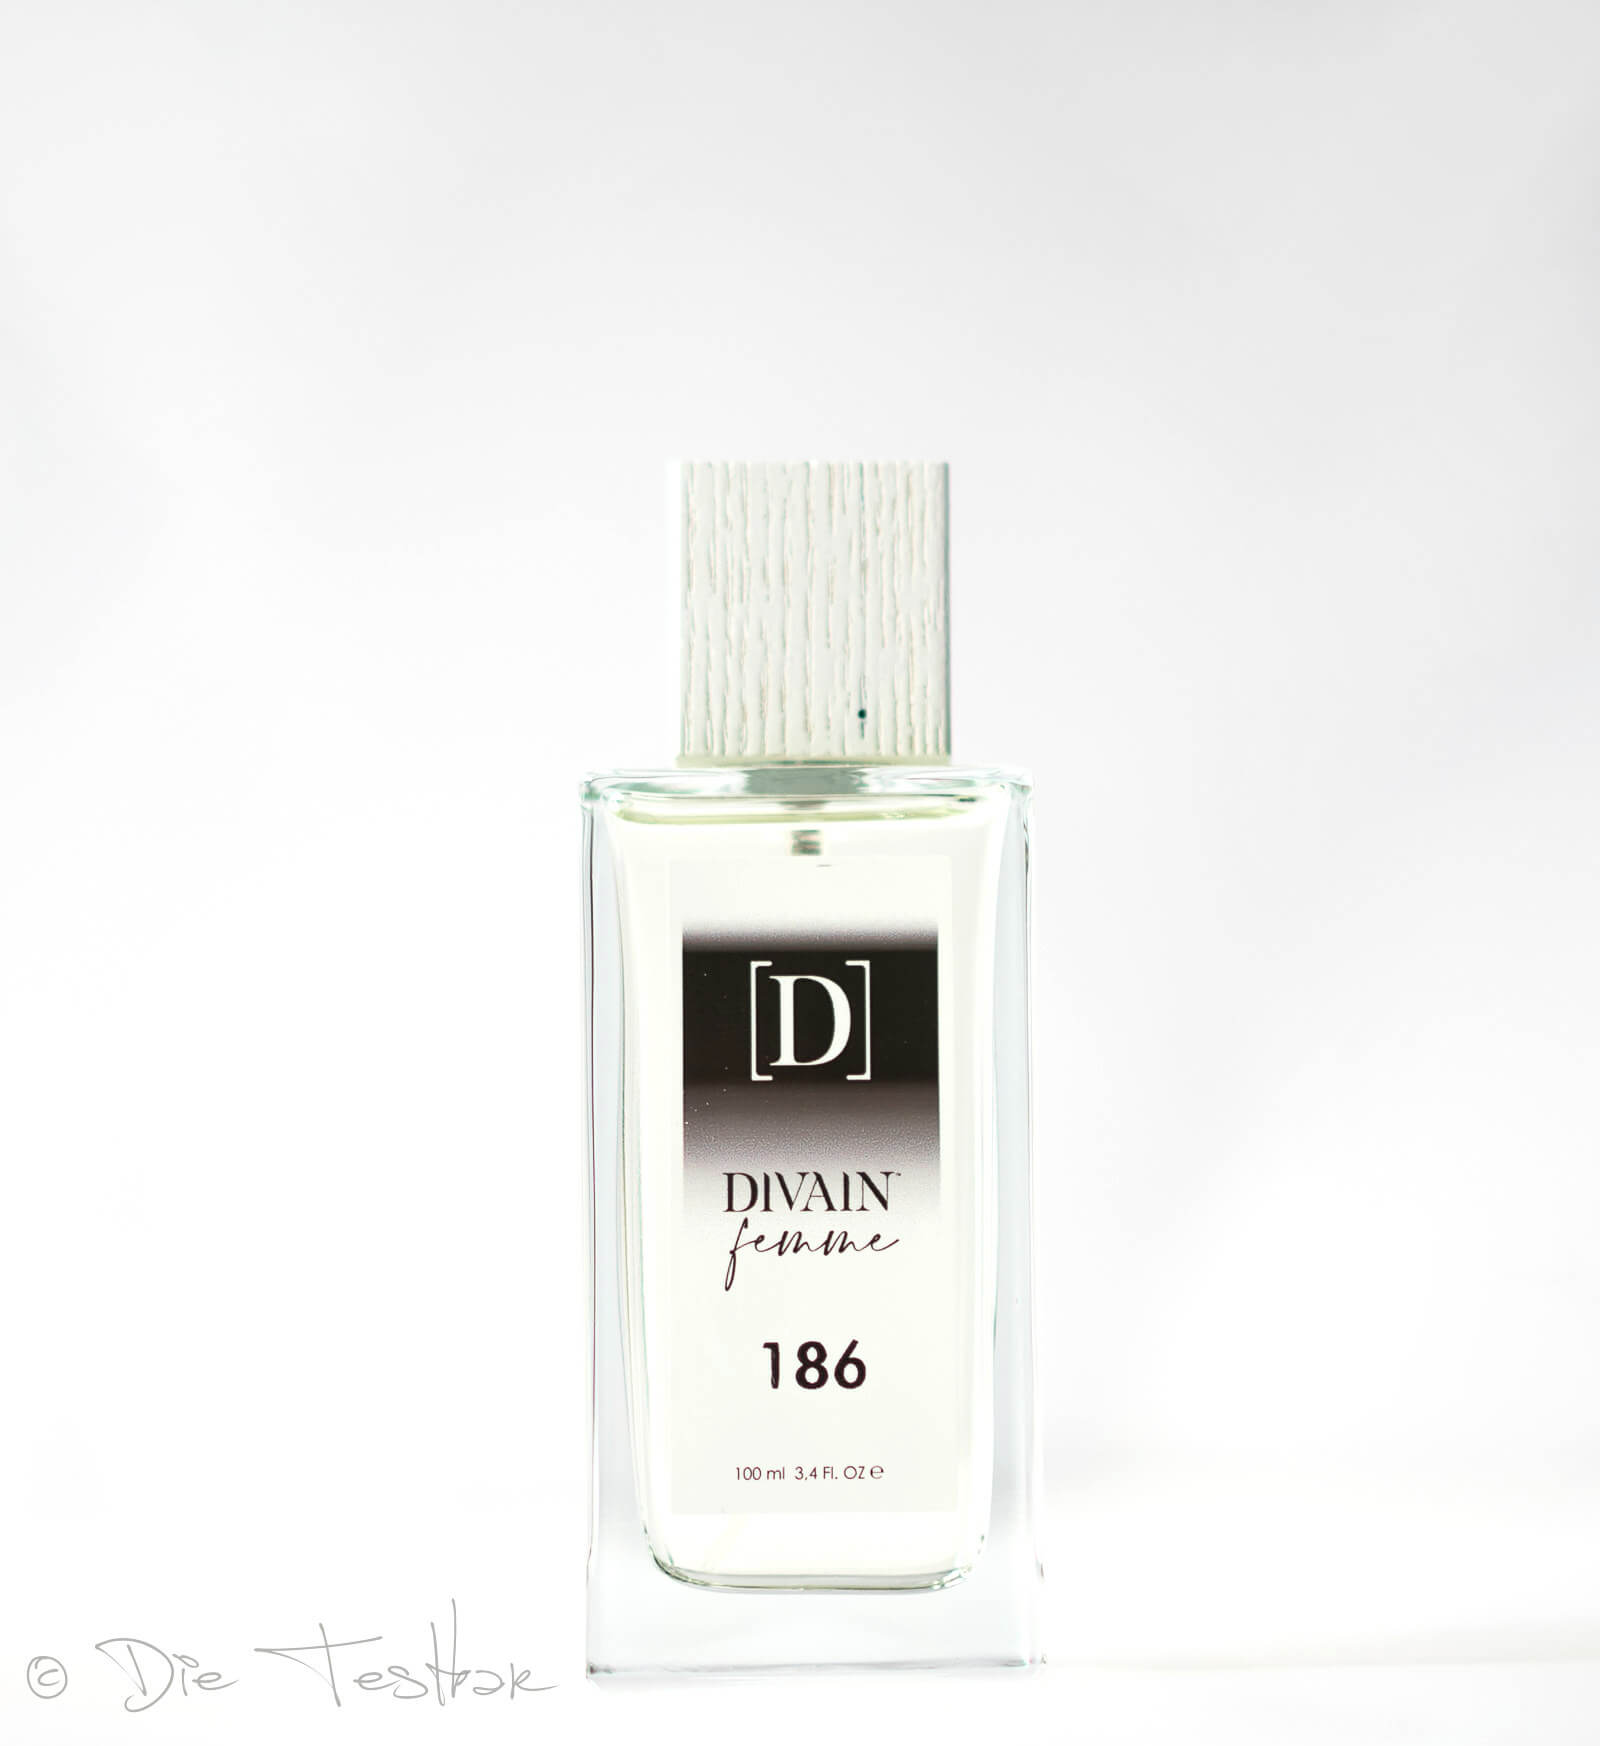 Review - Parfumzwillinge von Divain im Test 19